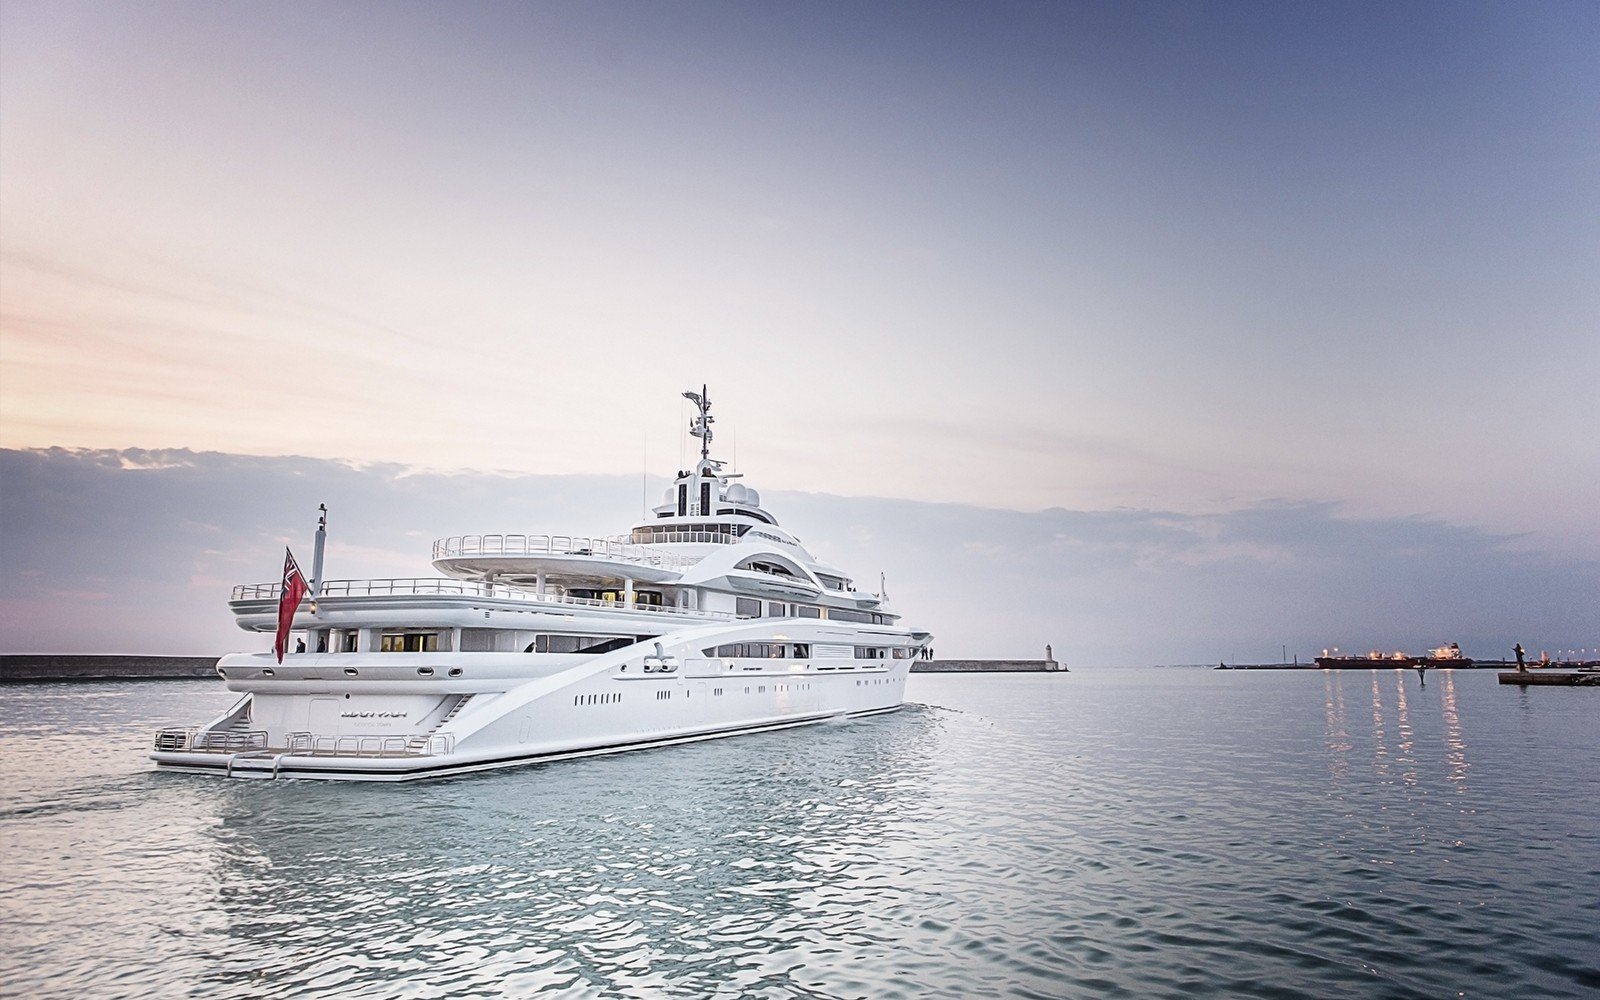 MARYAH Yacht • Sheikh Tahnoon $250M Superyacht • Elefsis Shipyard • 2015